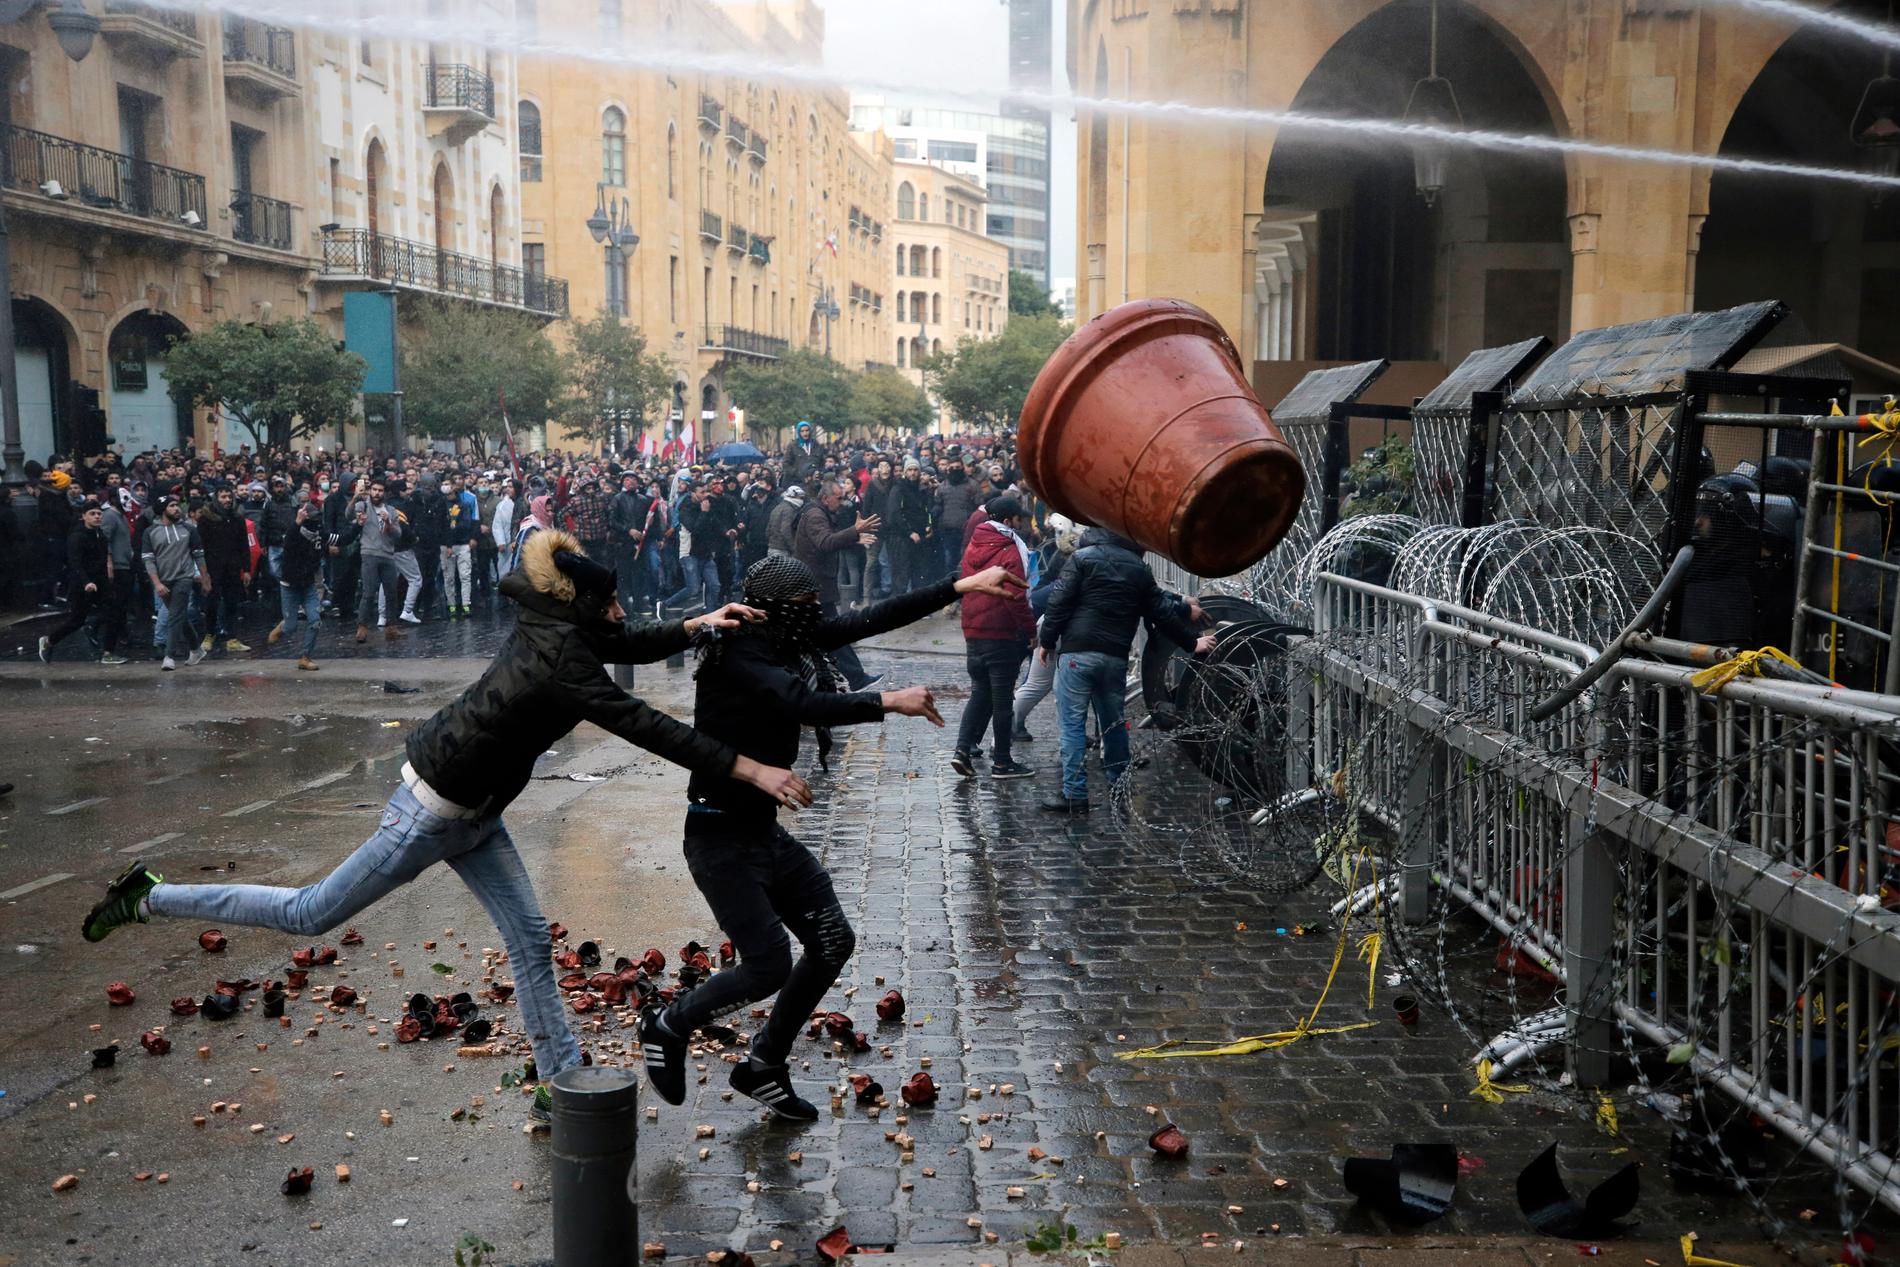 Demonstranter hivar en stor blomkruka mot poliser bakom en avspärrning vid parlamentet.